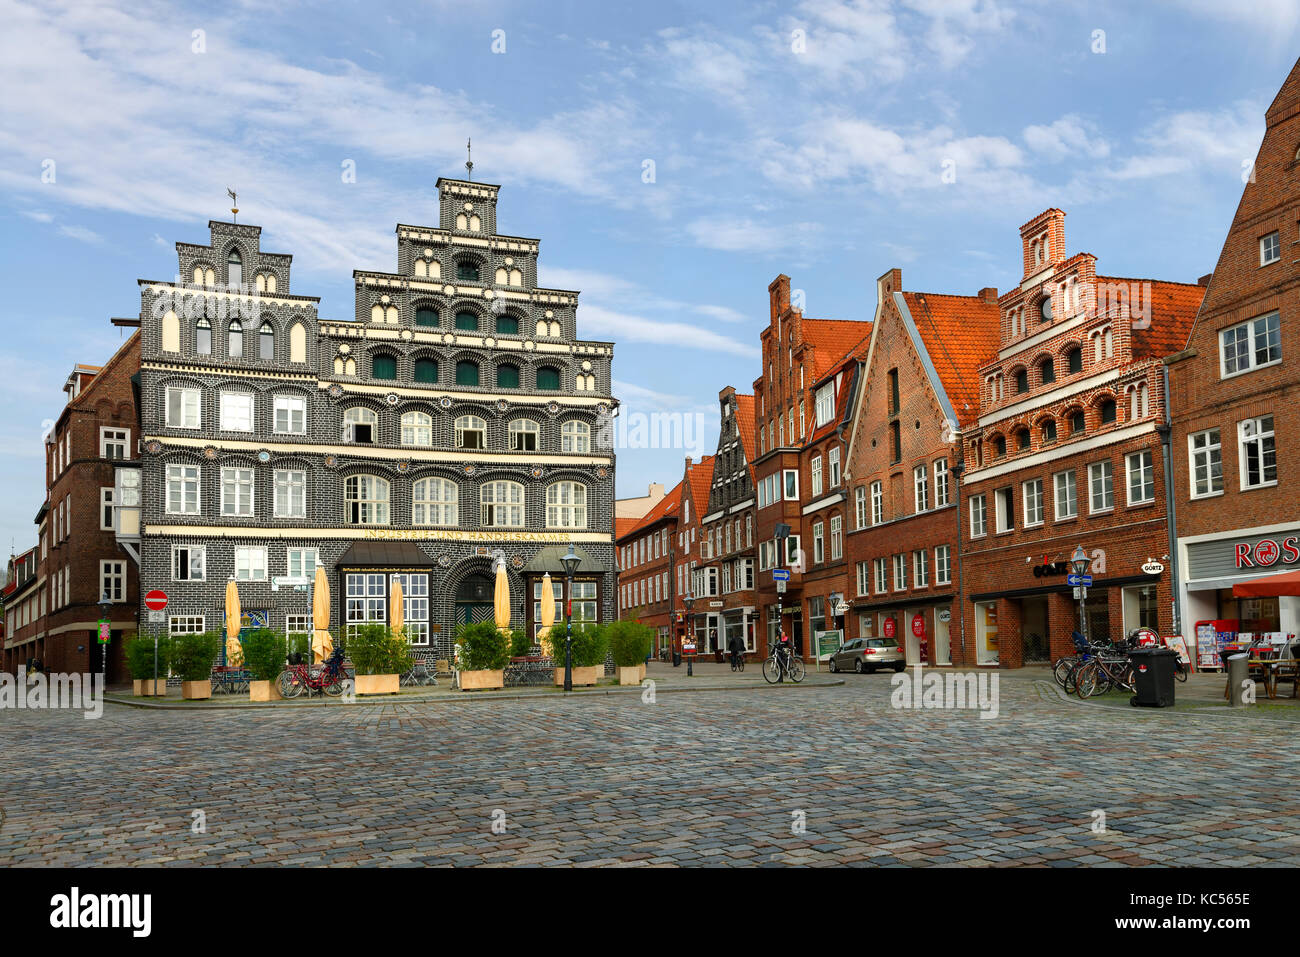 Am Sande, Stadtplatz mit Industrie- und Handelskammer, historische Gebäude, Altstadt, Lüneburg, Niedersachsen, Deutschland Stockfoto